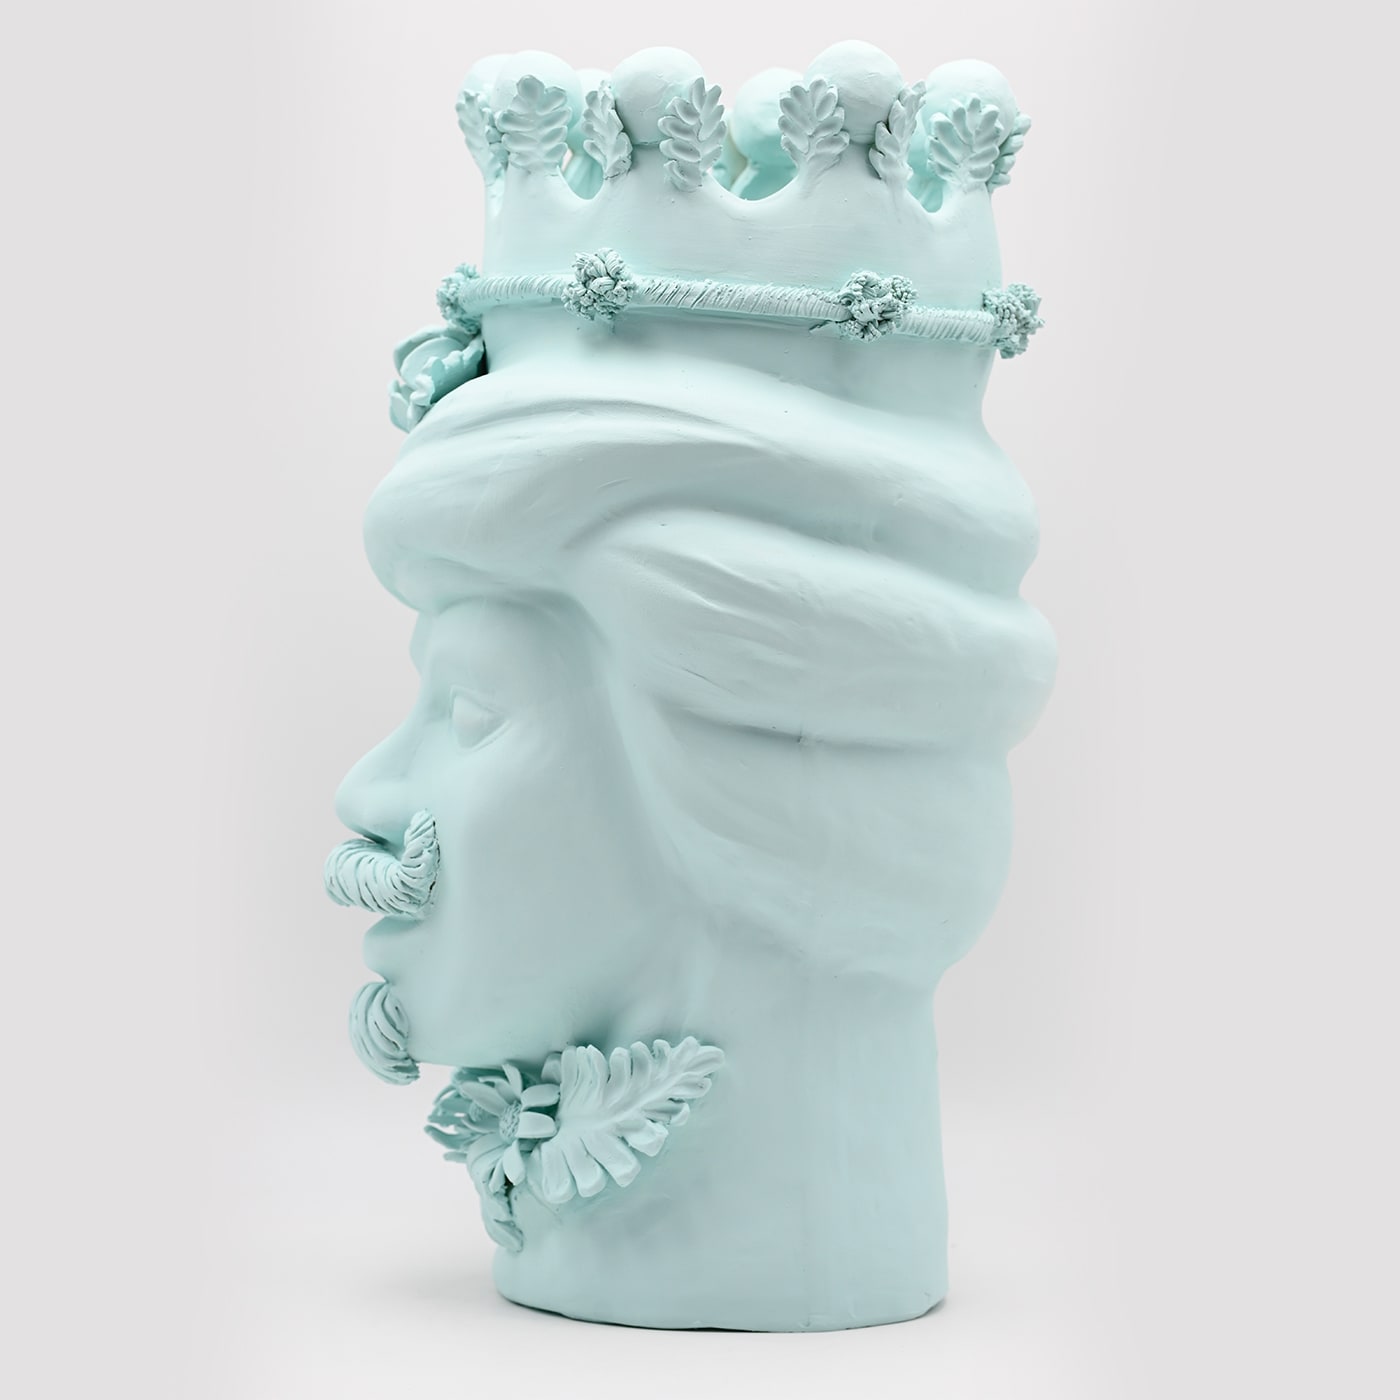 Moor's Head Sculpture in Sky Blue